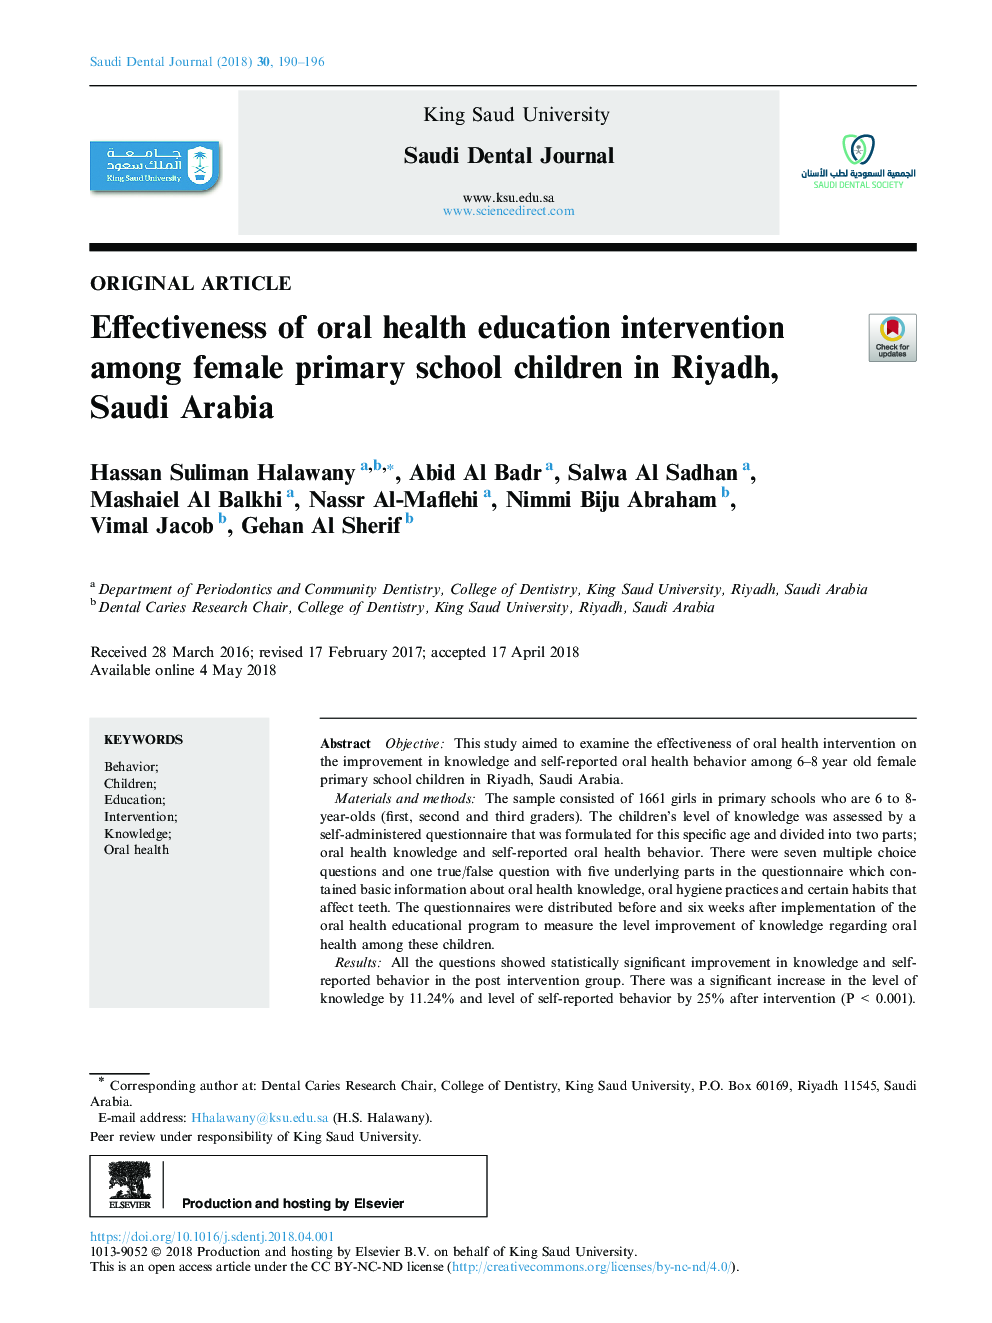 اثربخشی آموزش بهداشت دهان و دندان در میان دانش آموزان مدارس ابتدایی در ریاض، عربستان سعودی 